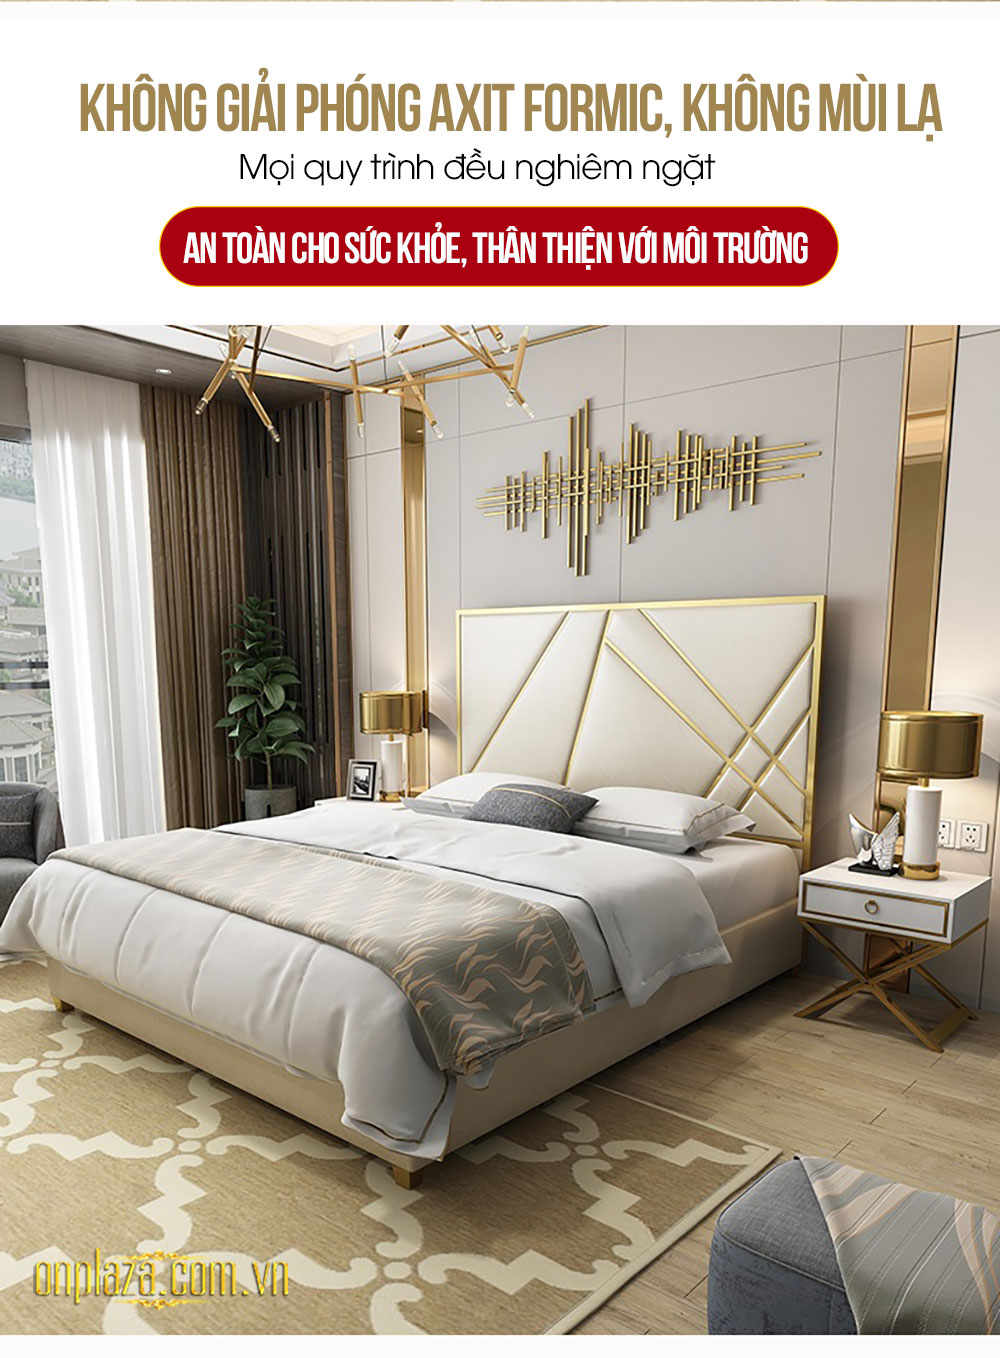 Bộ giường ngủ gỗ tự nhiên bọc da phối kim loại tinh tế phong cách thời trang hiện đại G162